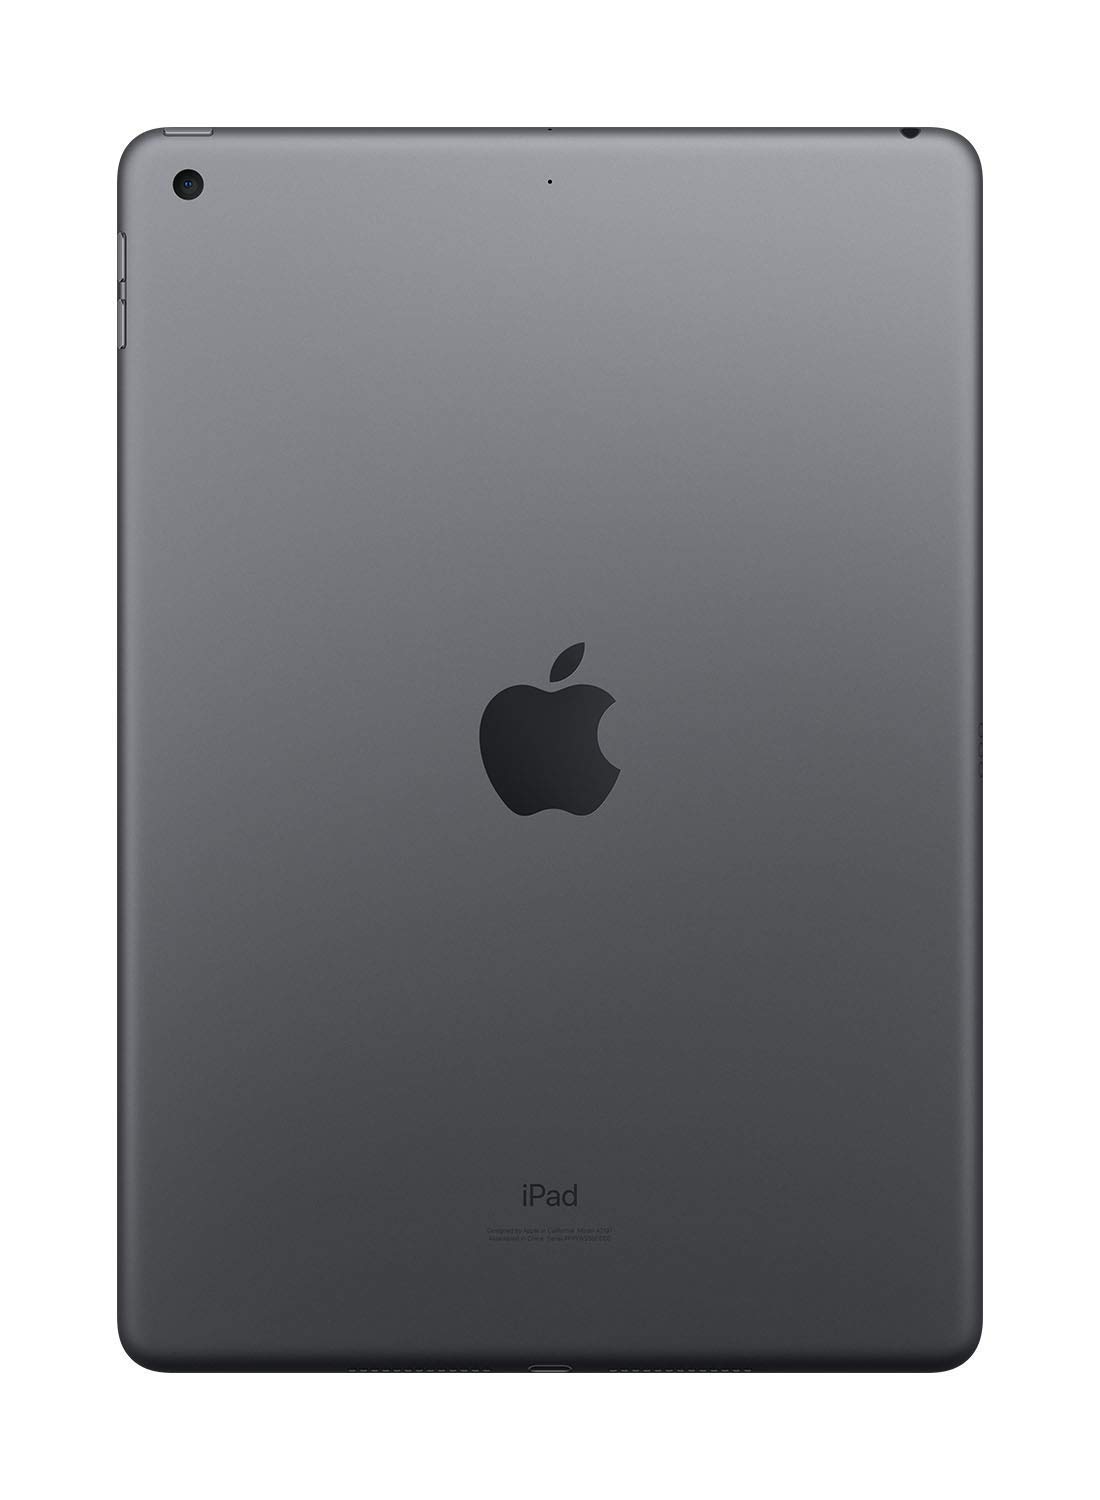 2019 Apple iPad (10.2-inch, Wi-Fi, 32GB) - Space Gray (Renewed Premium)